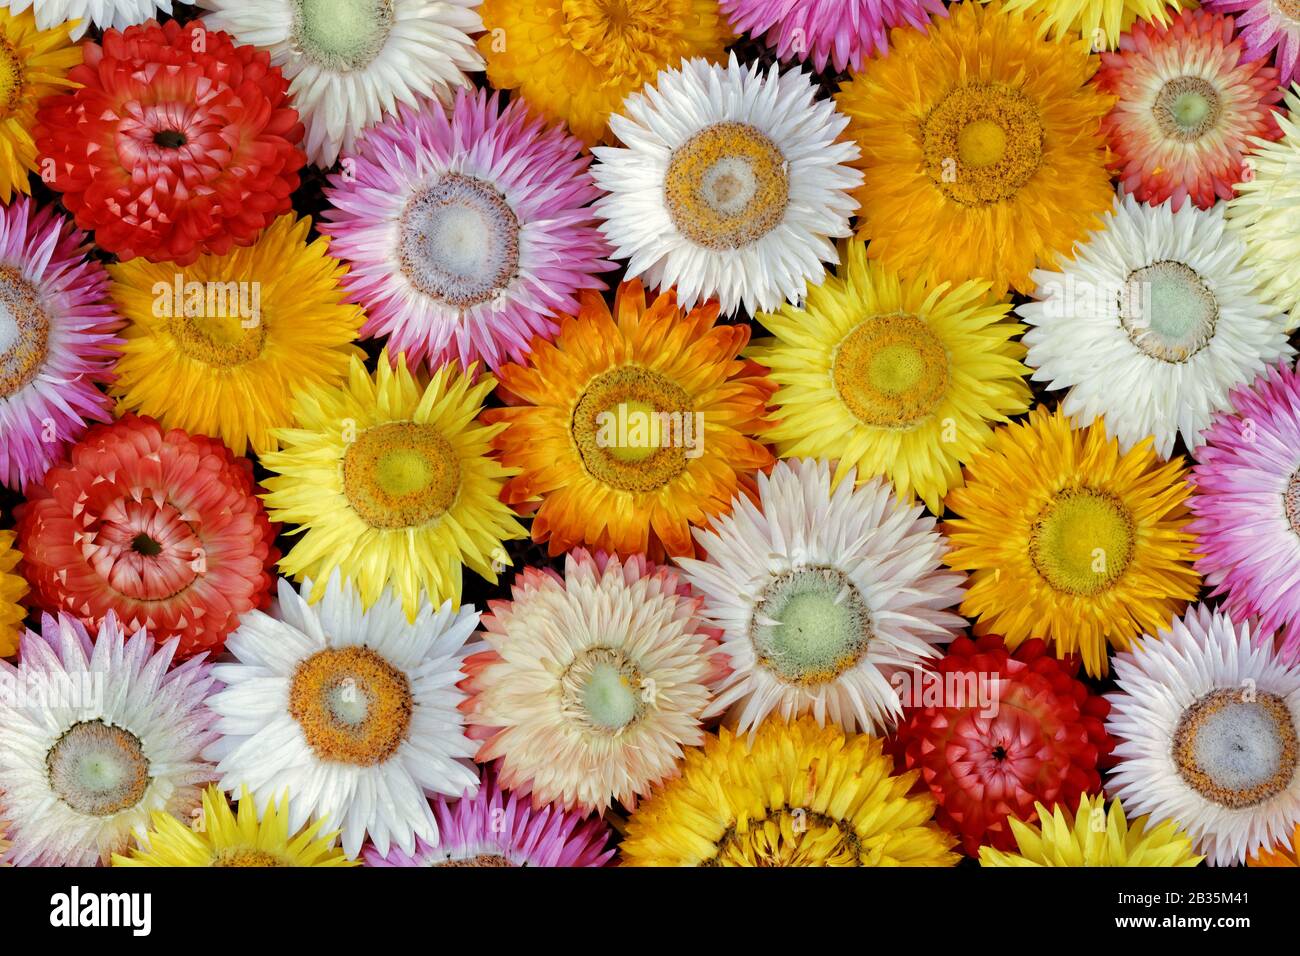 Fiore di paglia essiccato - Vista di Closeup ( Helichrysum bratteatum ): Vista di primo piano di fiori secchi di paglia variamente colorati, più o meno aperti Foto Stock